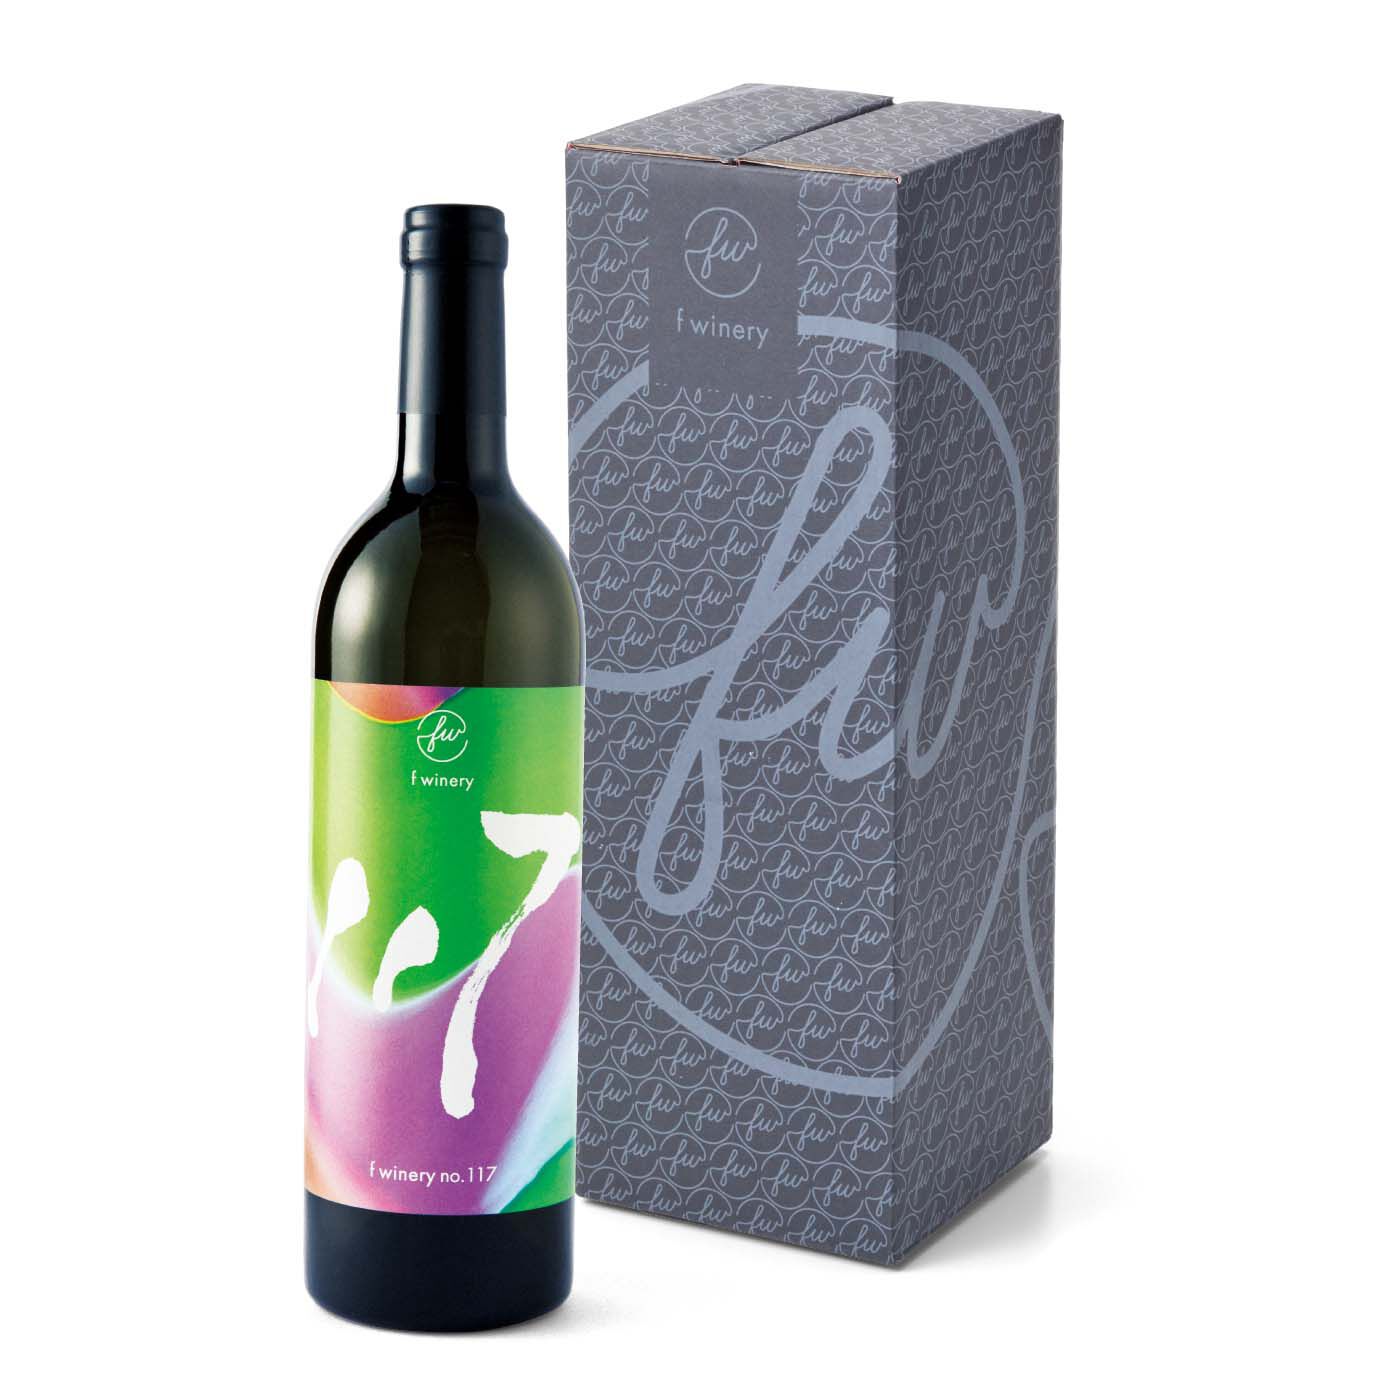 フェリシモコレクション|フェリシモワイン醸造所 ぜいたくな時間を楽しむワインの会（6回予約）|1回のお届け例です。贈り物としても使えるボックスです。